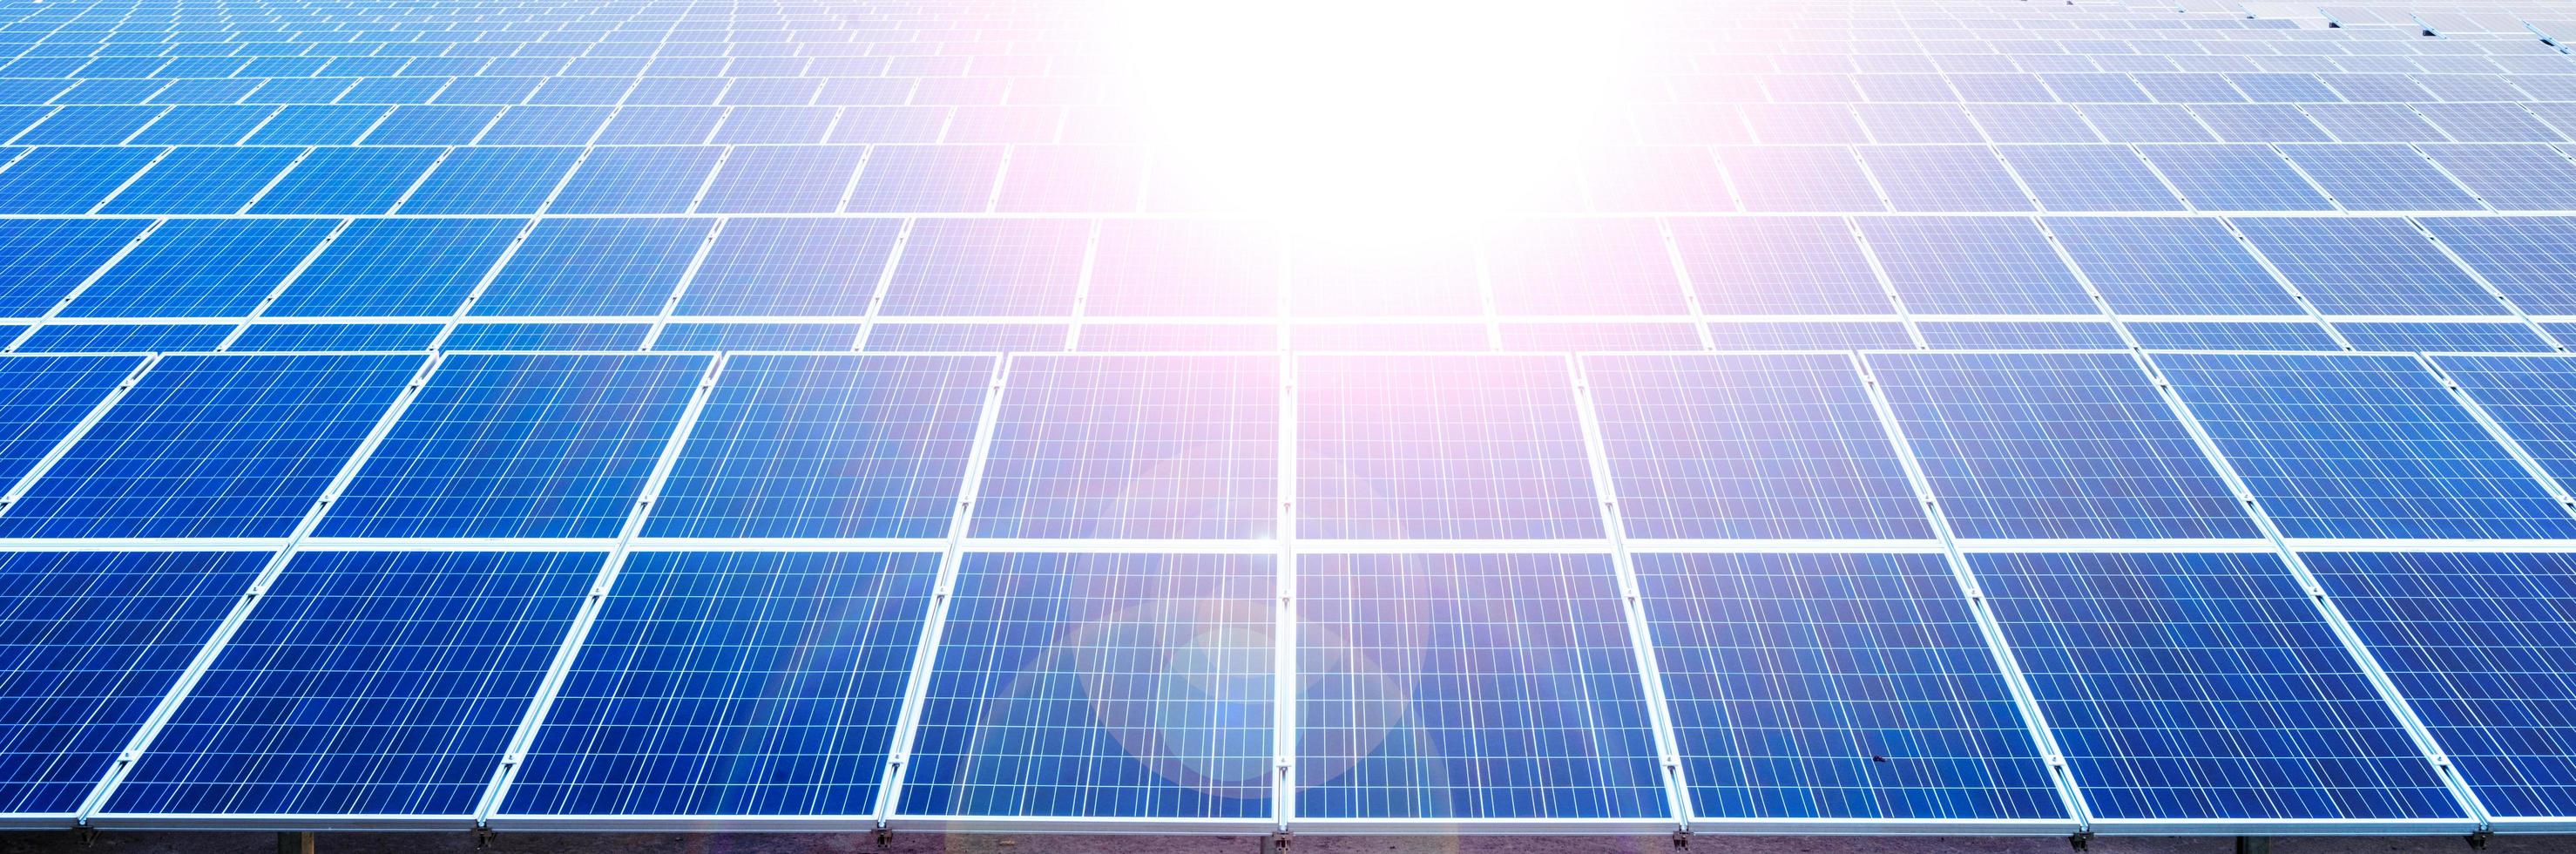 panneaux de cellules solaires dans une centrale photovoltaïque photo